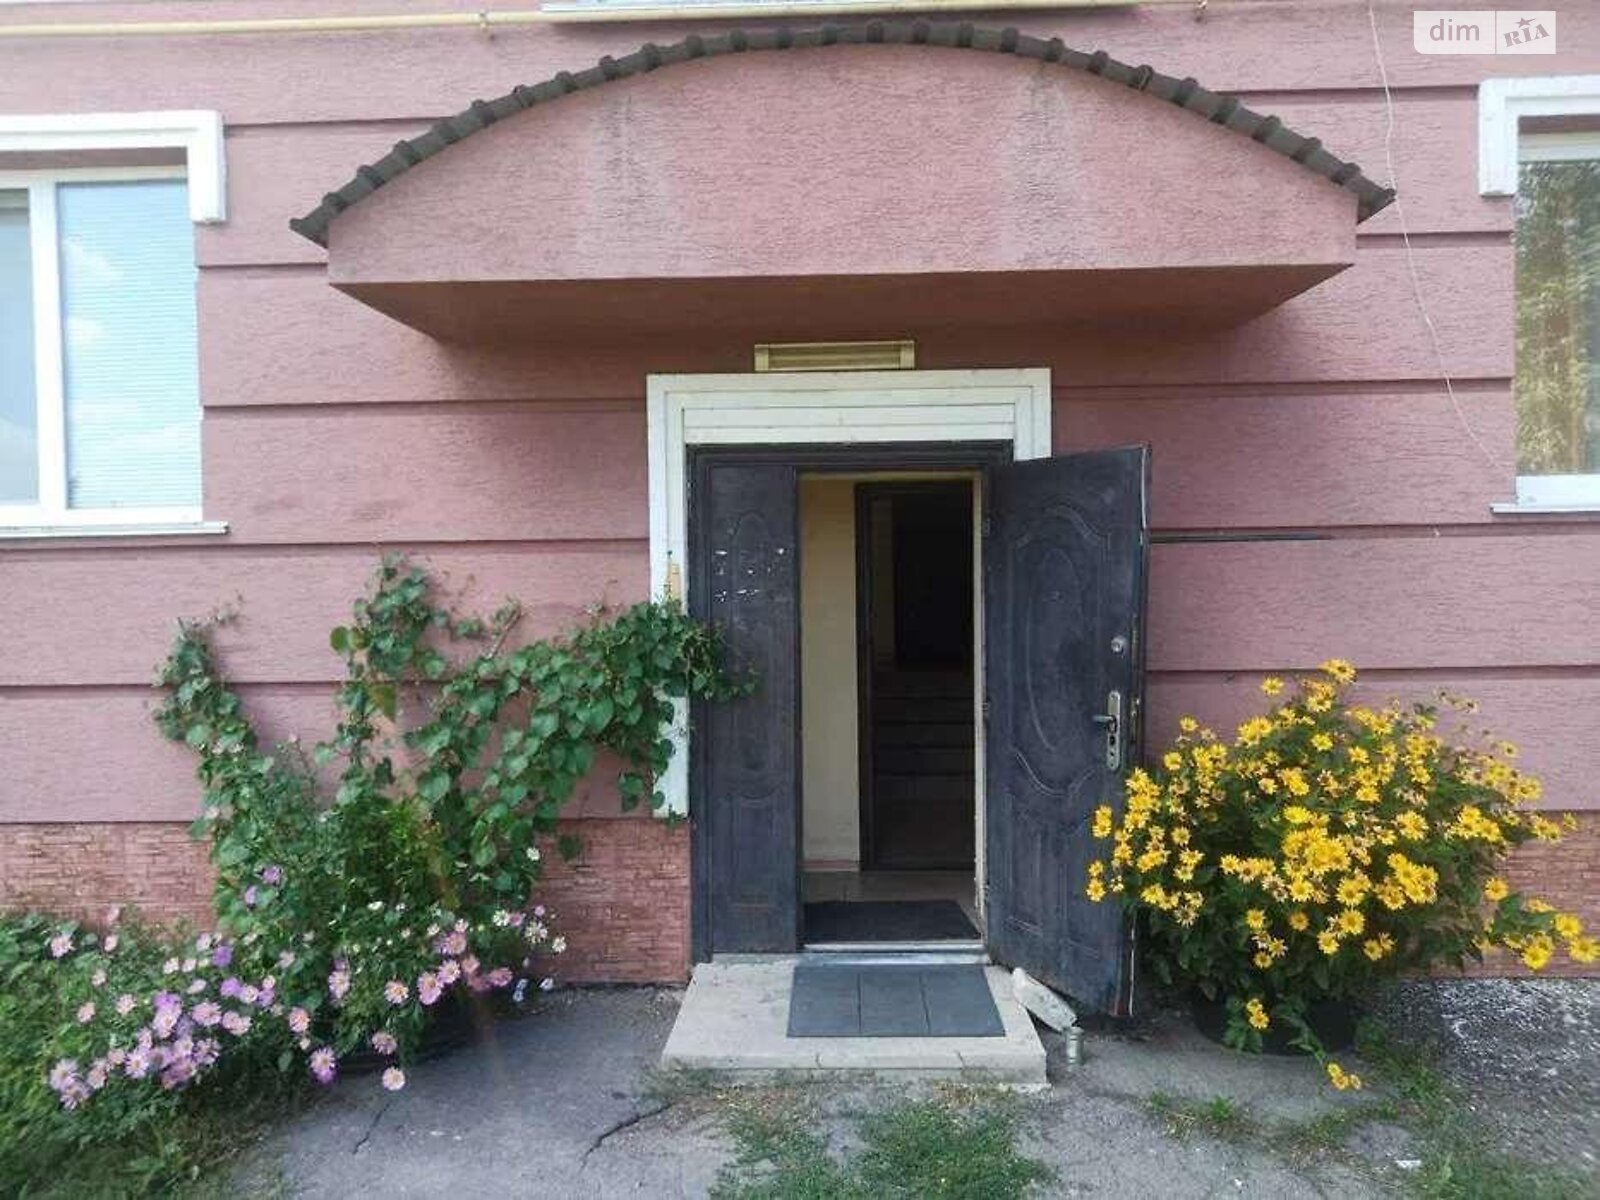 Продаж однокімнатної квартири в Яблунівці, на Ленина 136, фото 1